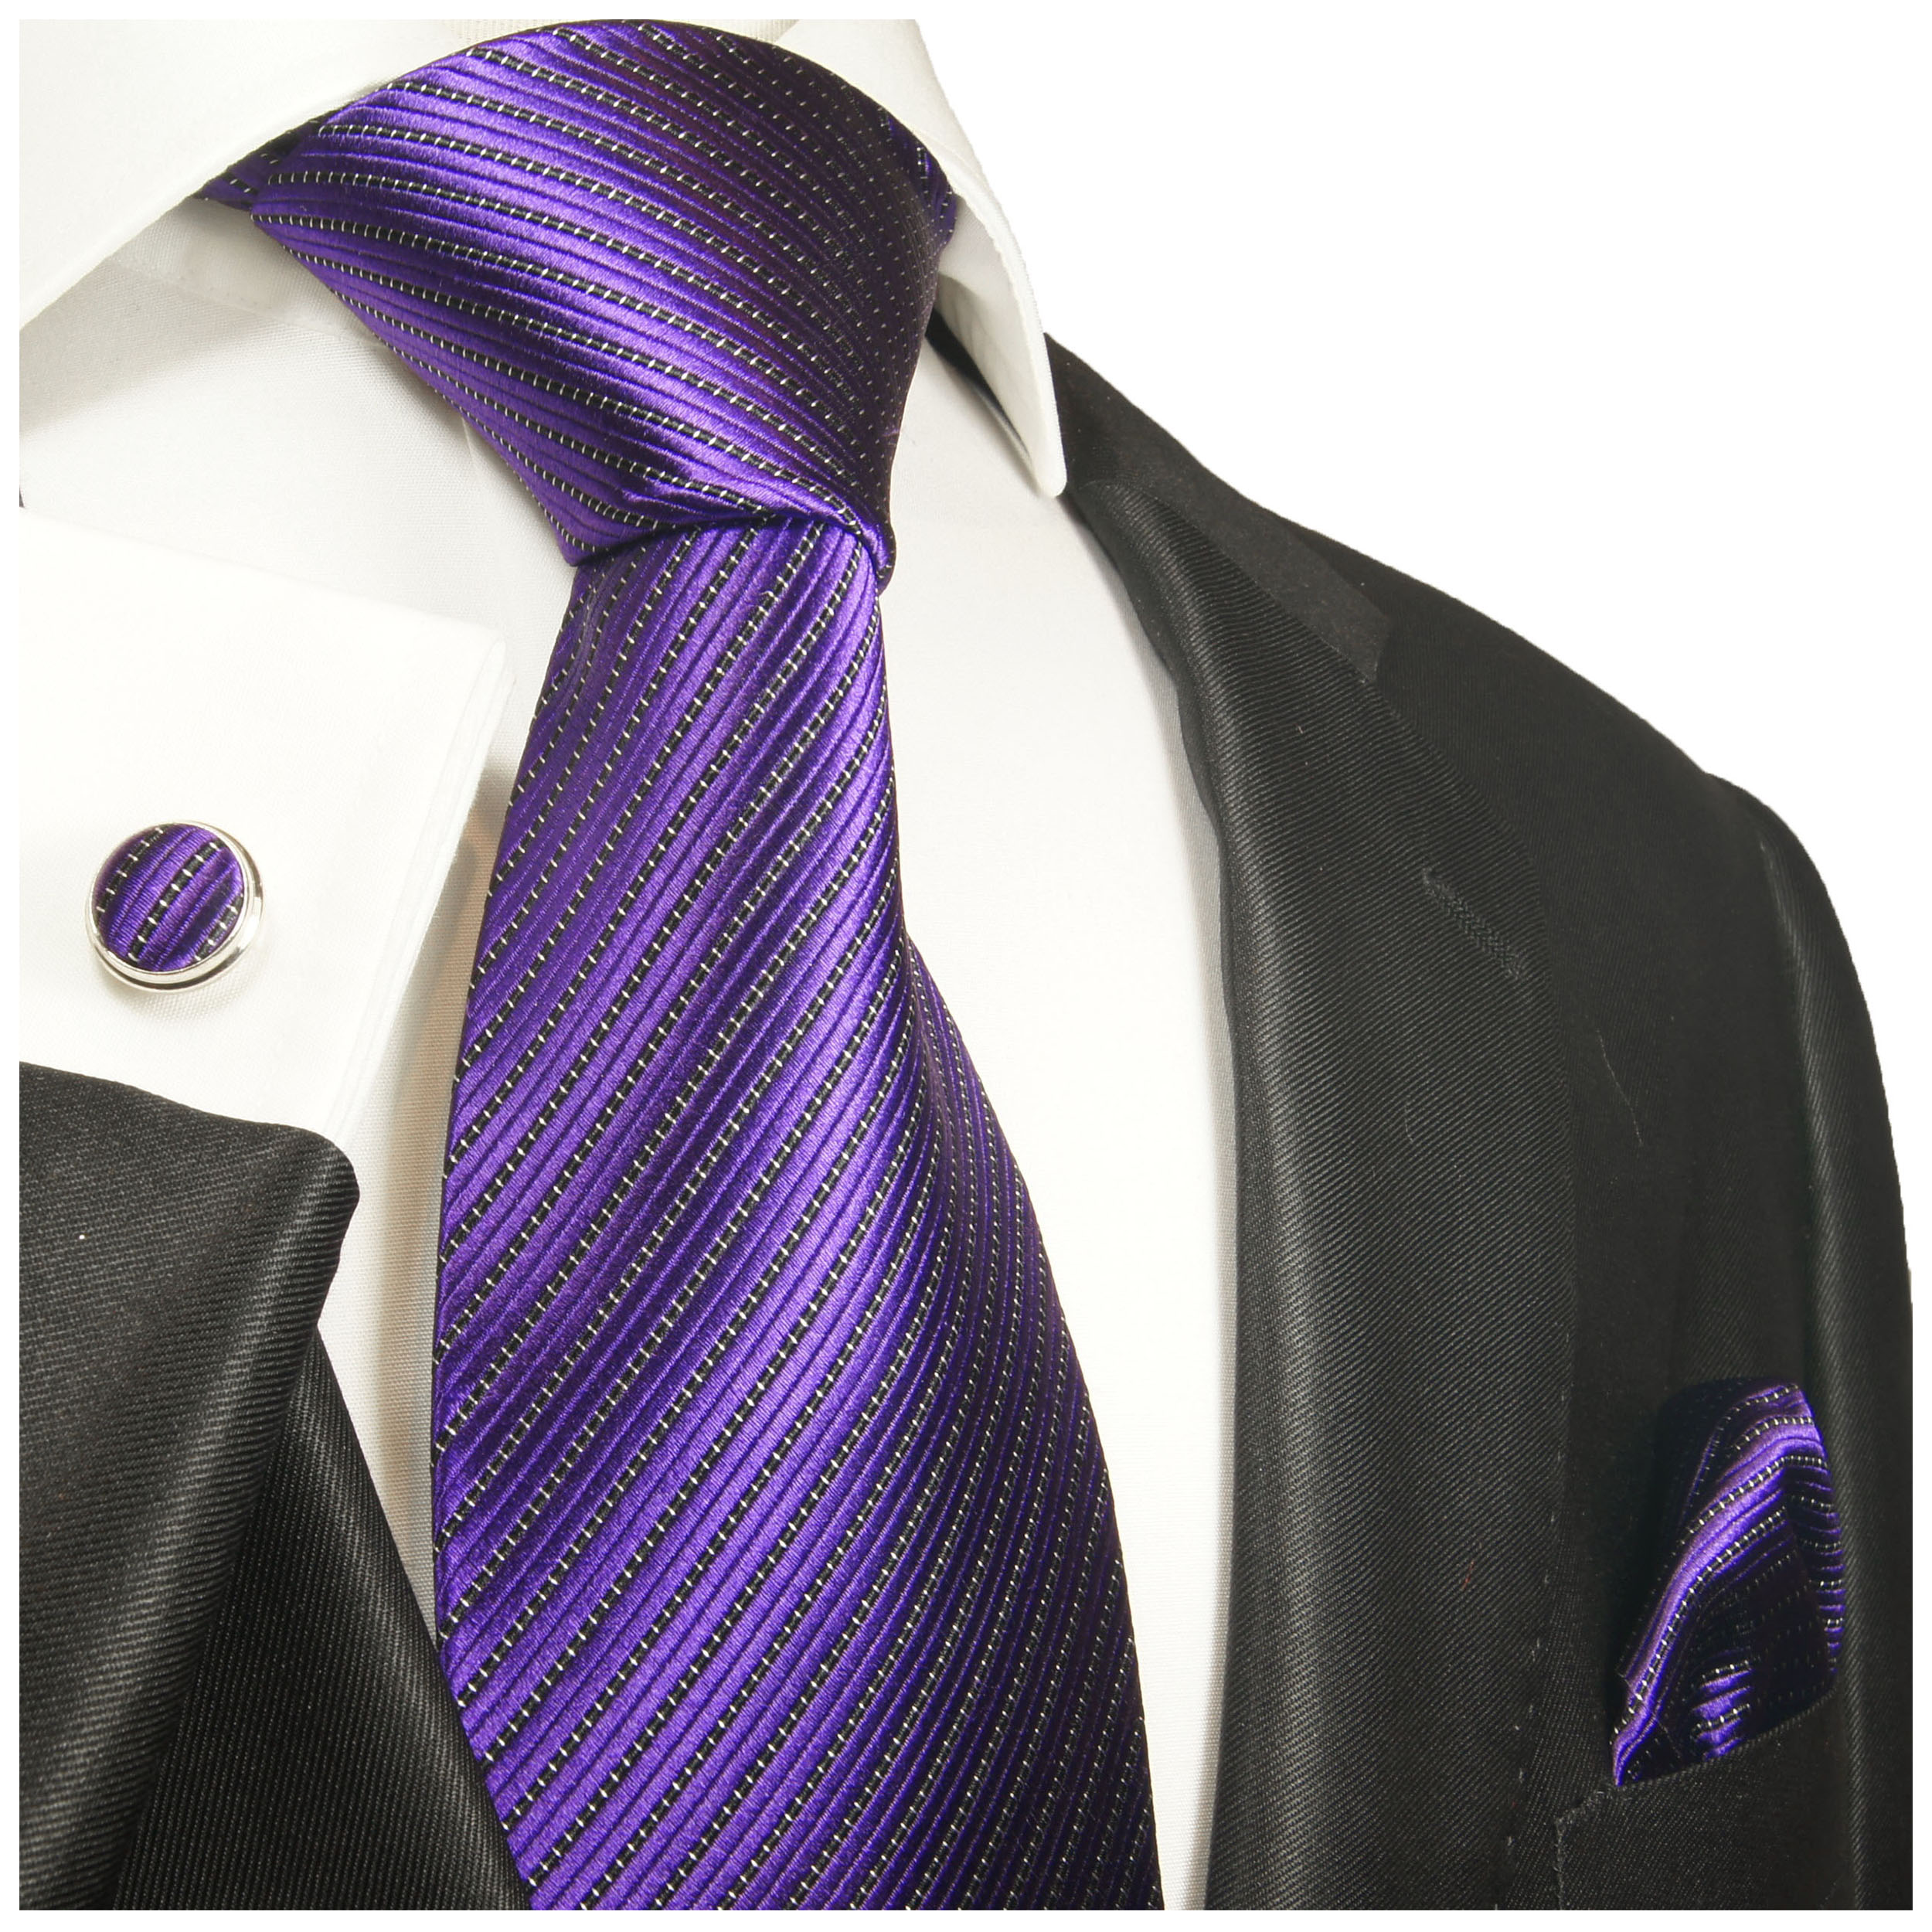 Violett lila schwarz gestreifte Krawatte 100% Seidenkrawatte